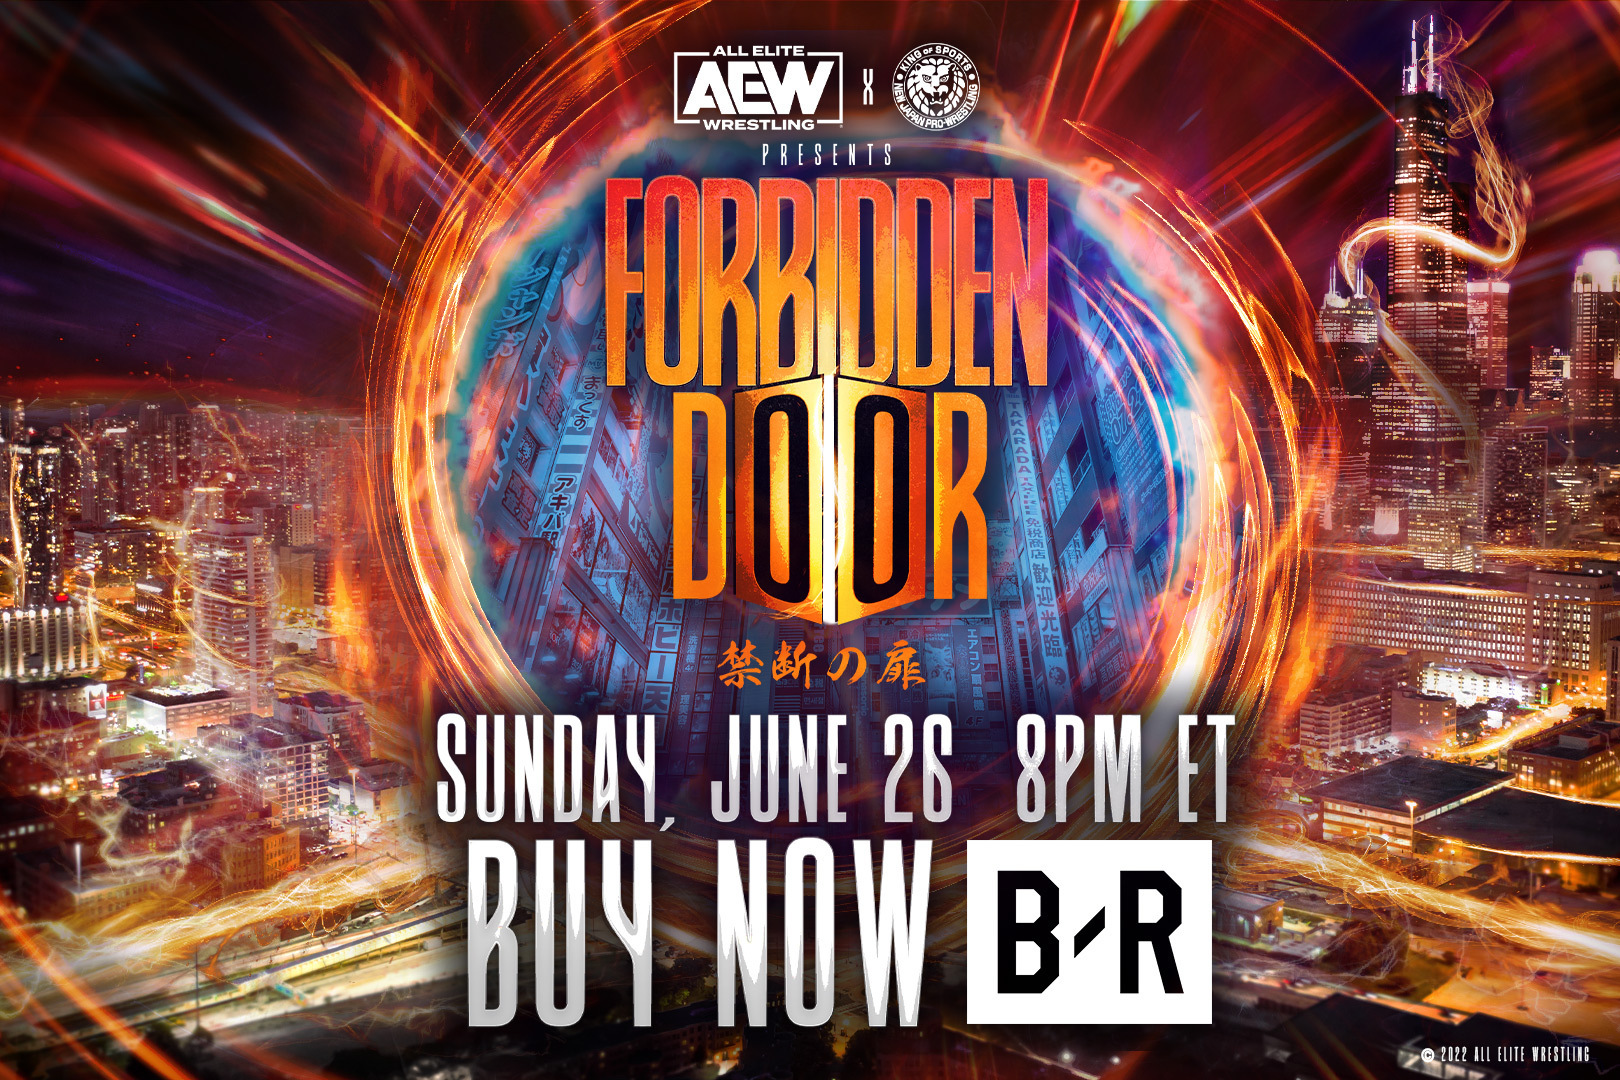 AEW x NJPW: Forbidden Door